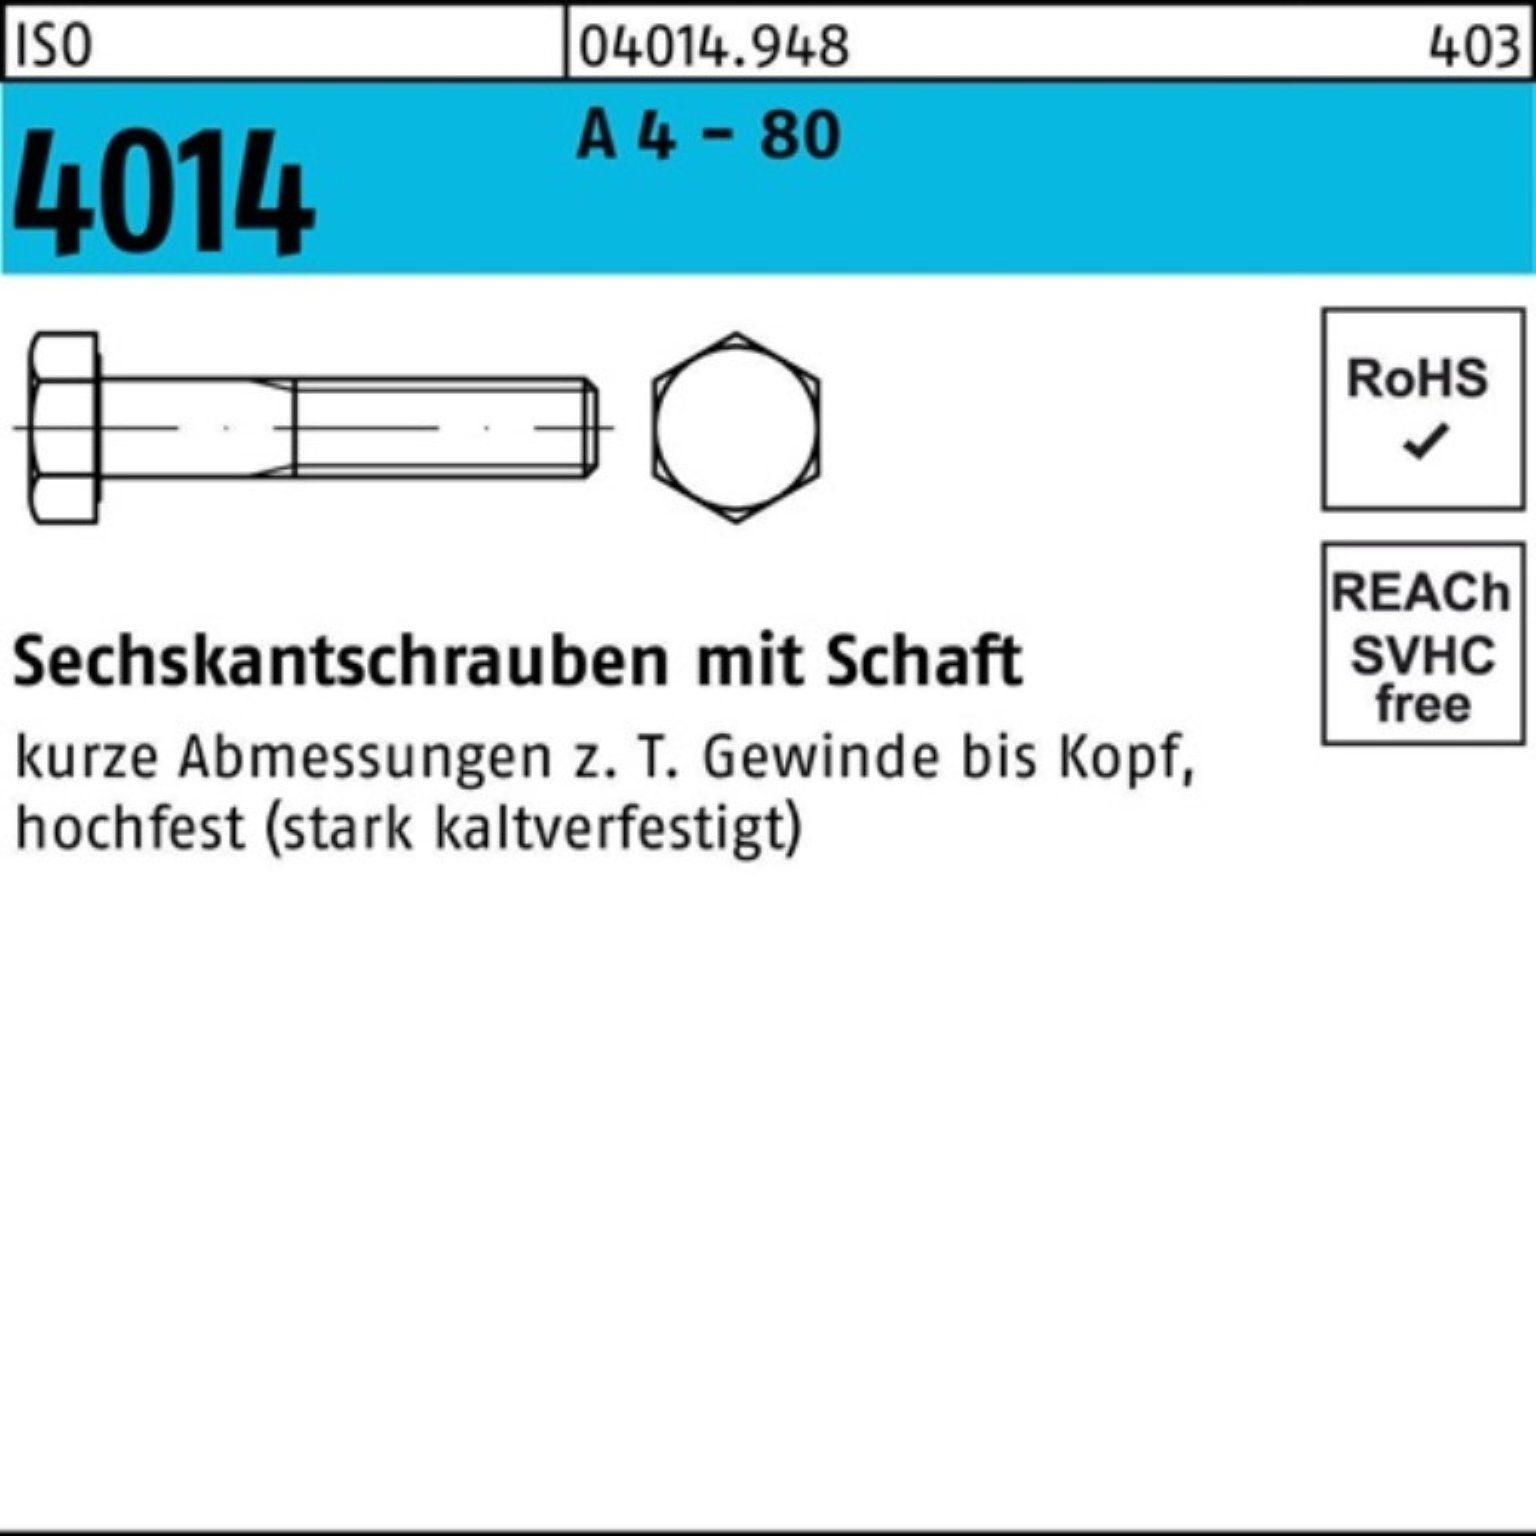 Bufab 4 Sechskantschraube - 75 A 100er 50 80 M10x ISO Stüc Pack Schaft 4014 Sechskantschraube